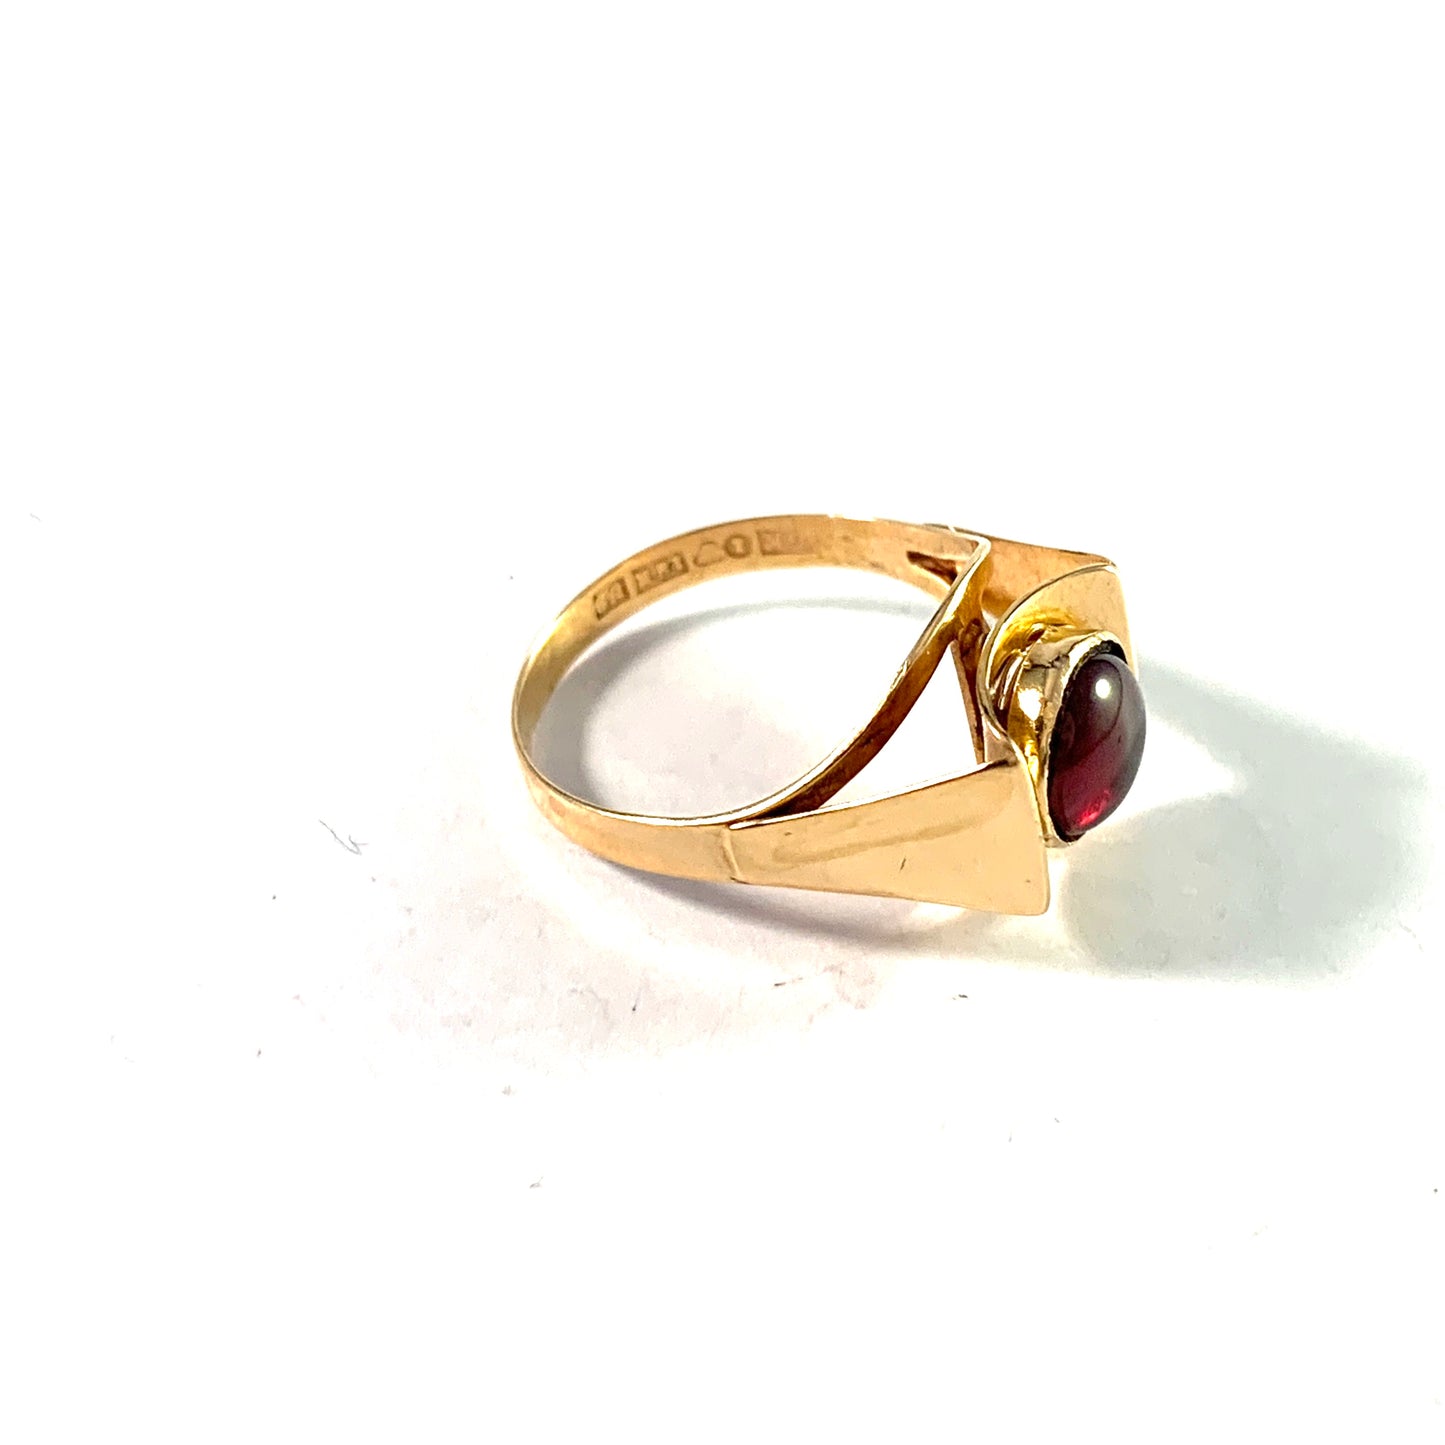 Kaplan, Sweden 1970. Vintage Modernist 18k Gold Deep Red Synthetic Stone Ring.